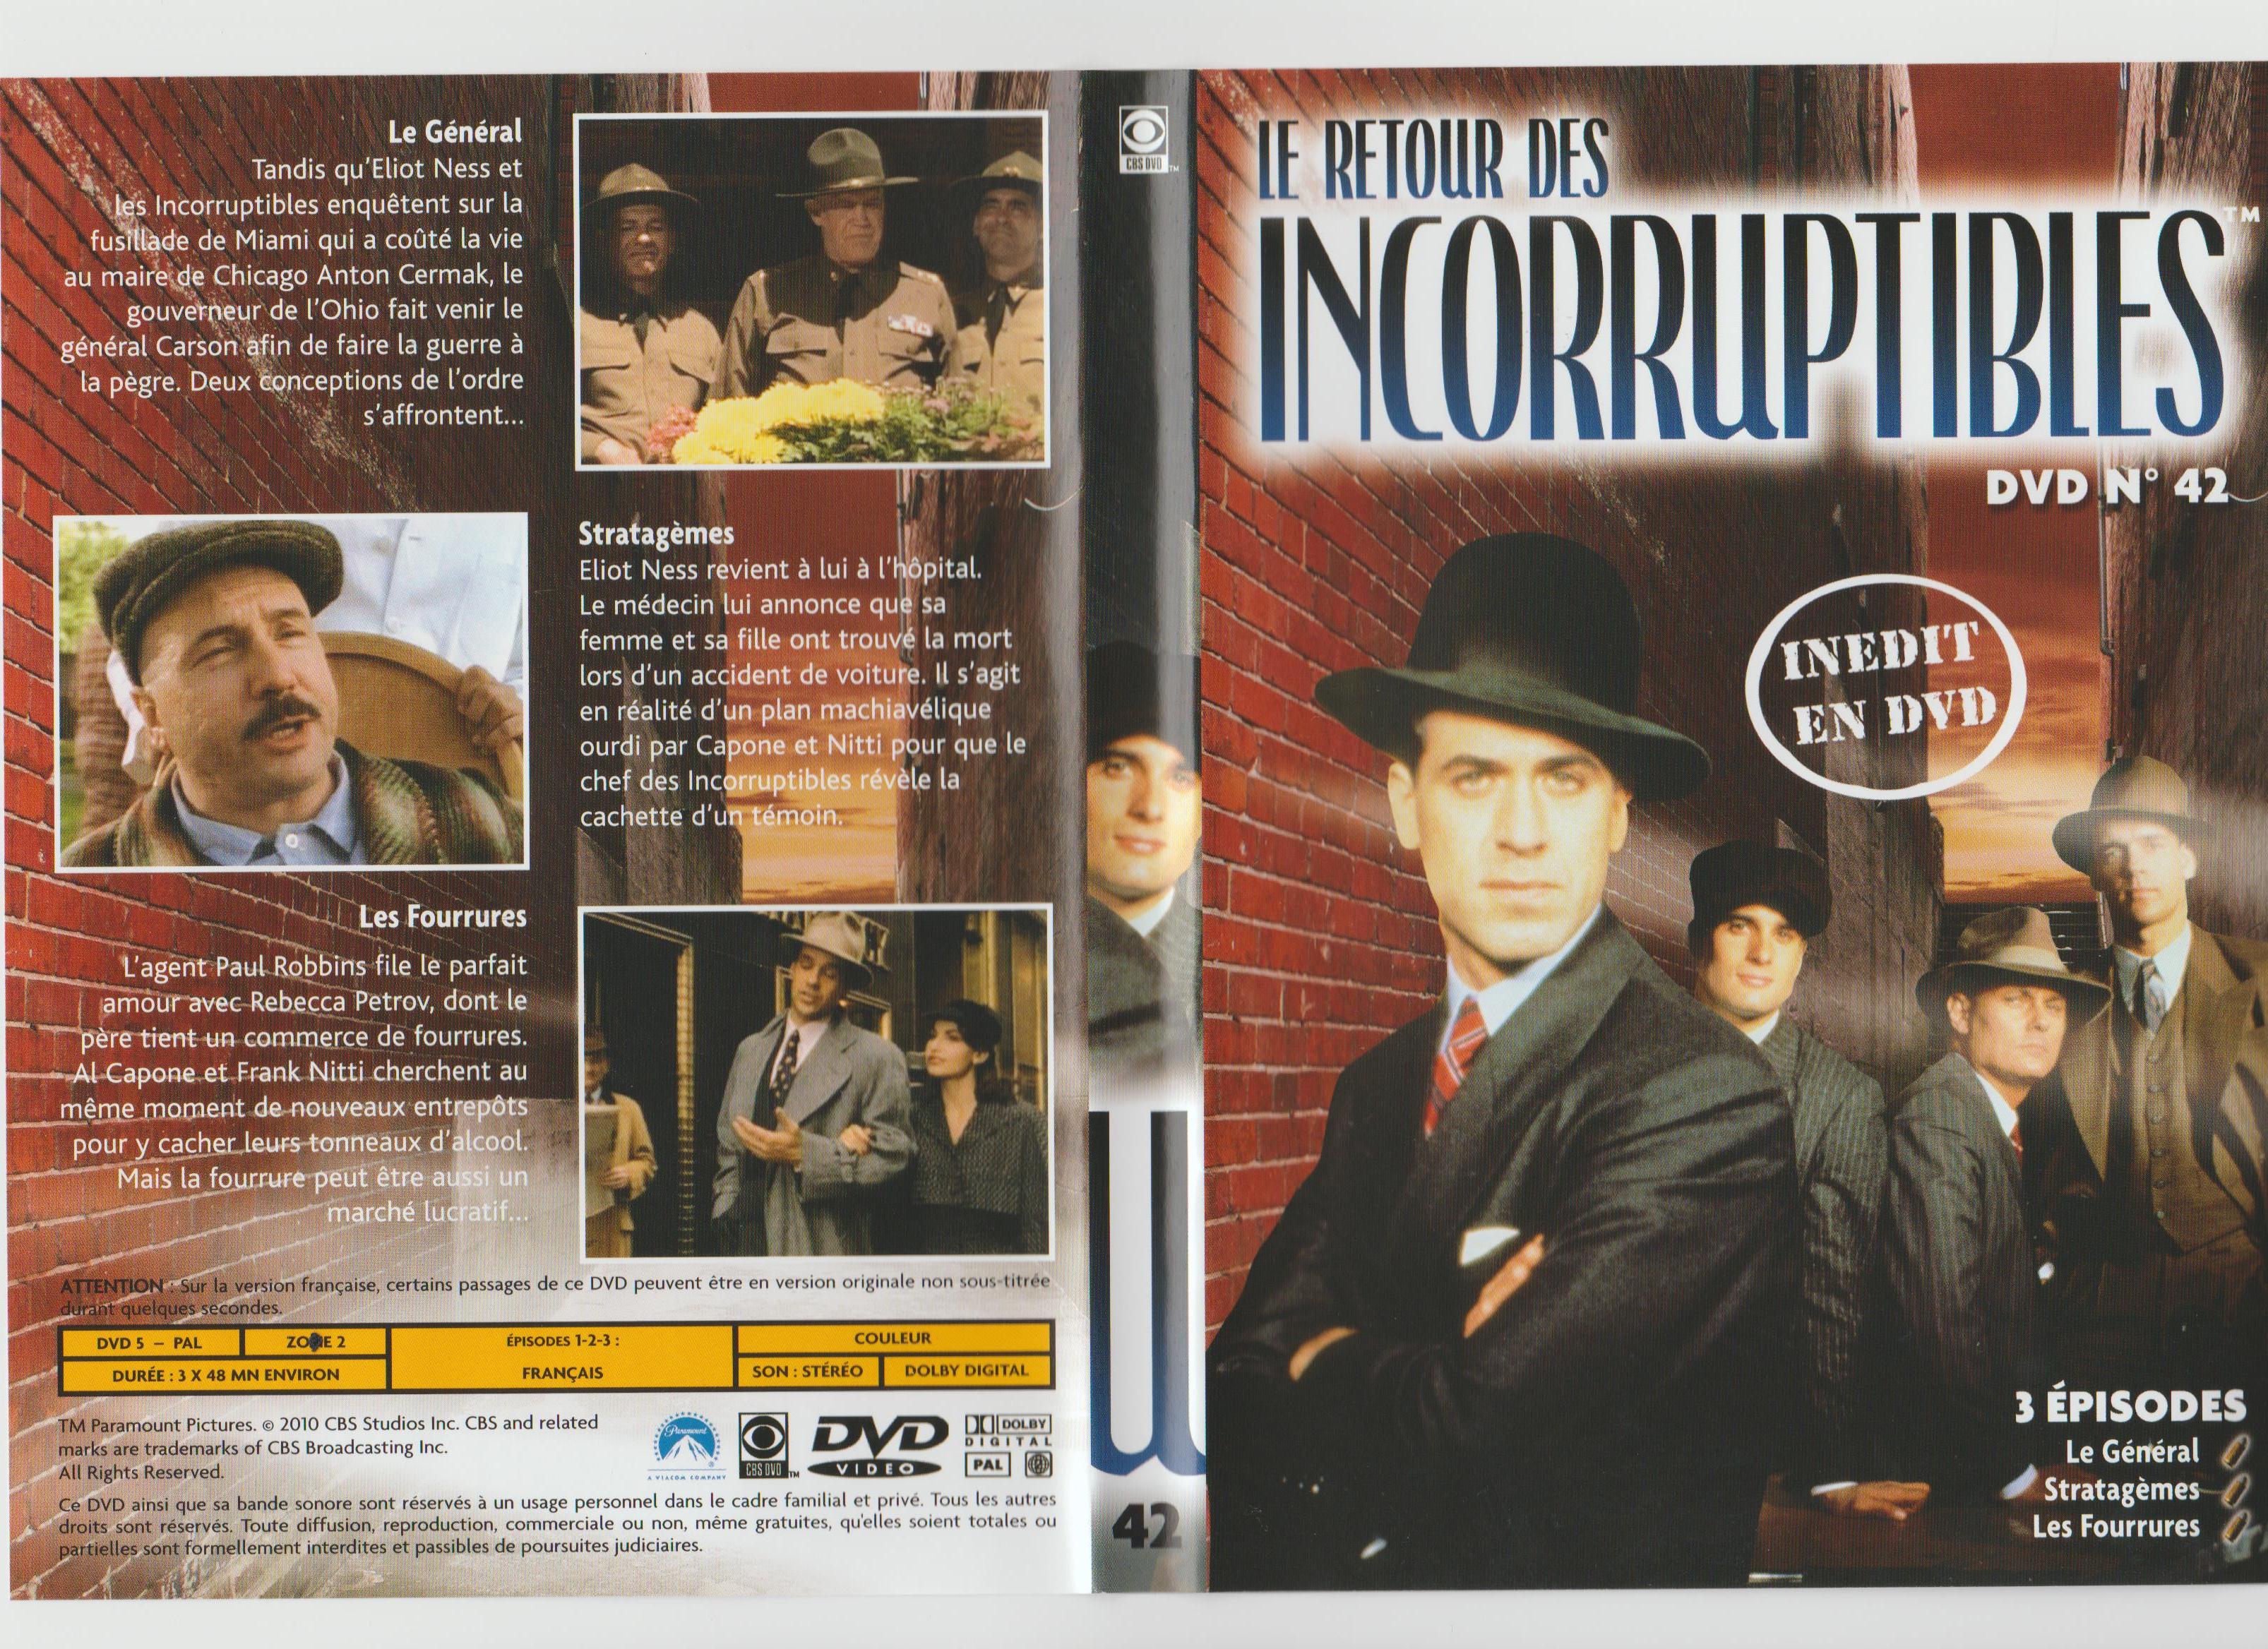 Jaquette DVD Le retour des incorruptibles DVD 42